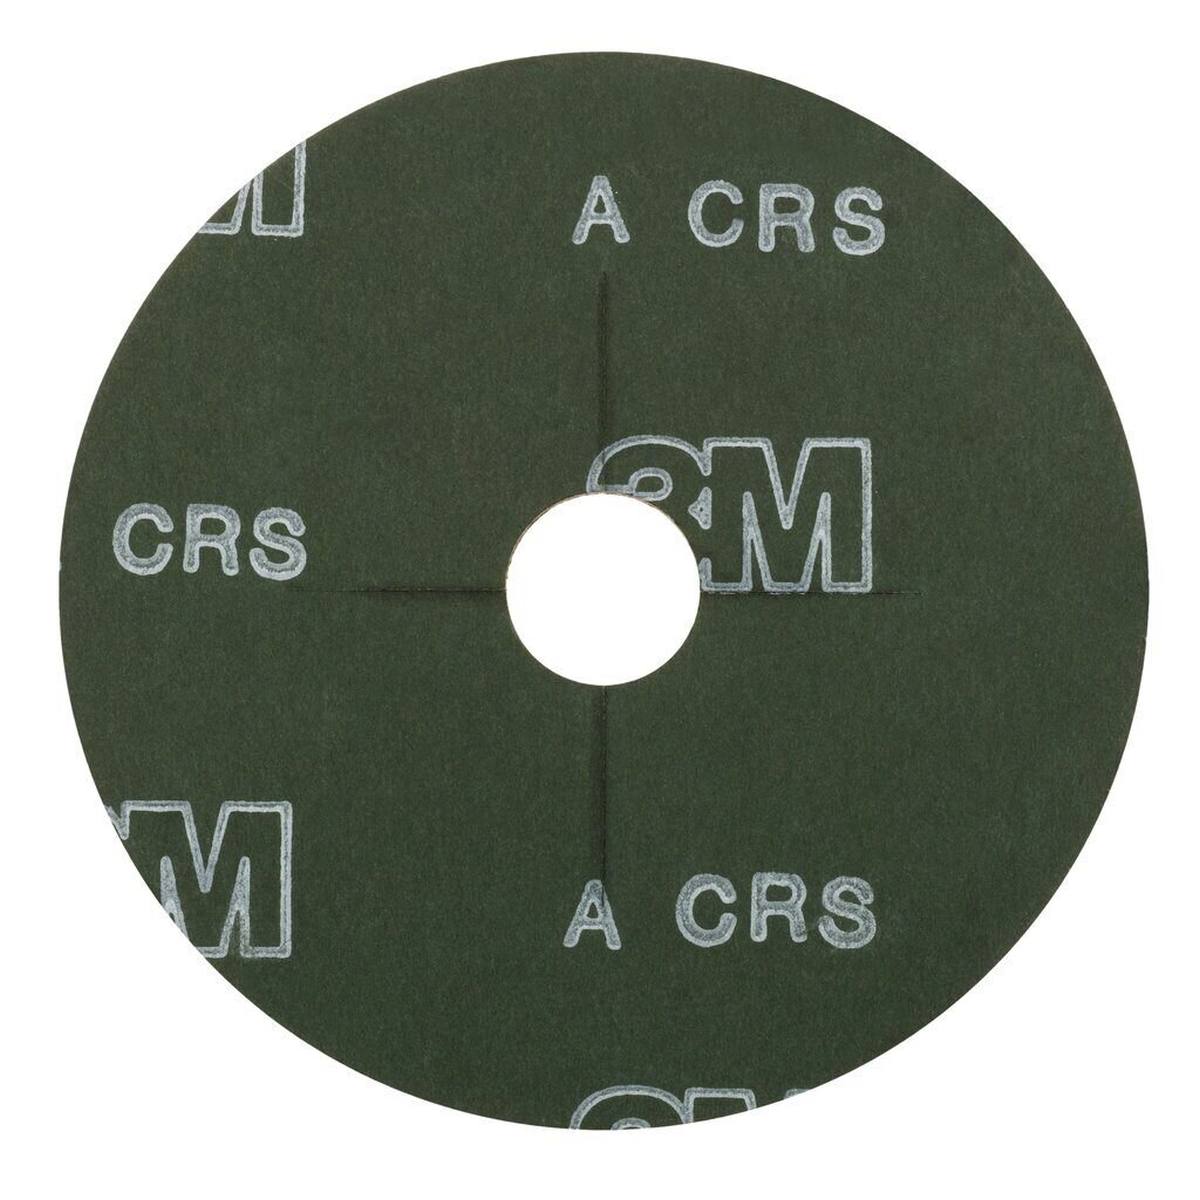 3M Scotch-Brite disco no tejido SC-DB con soporte de fibra, 115 mm, 22 mm, A, grueso #12624